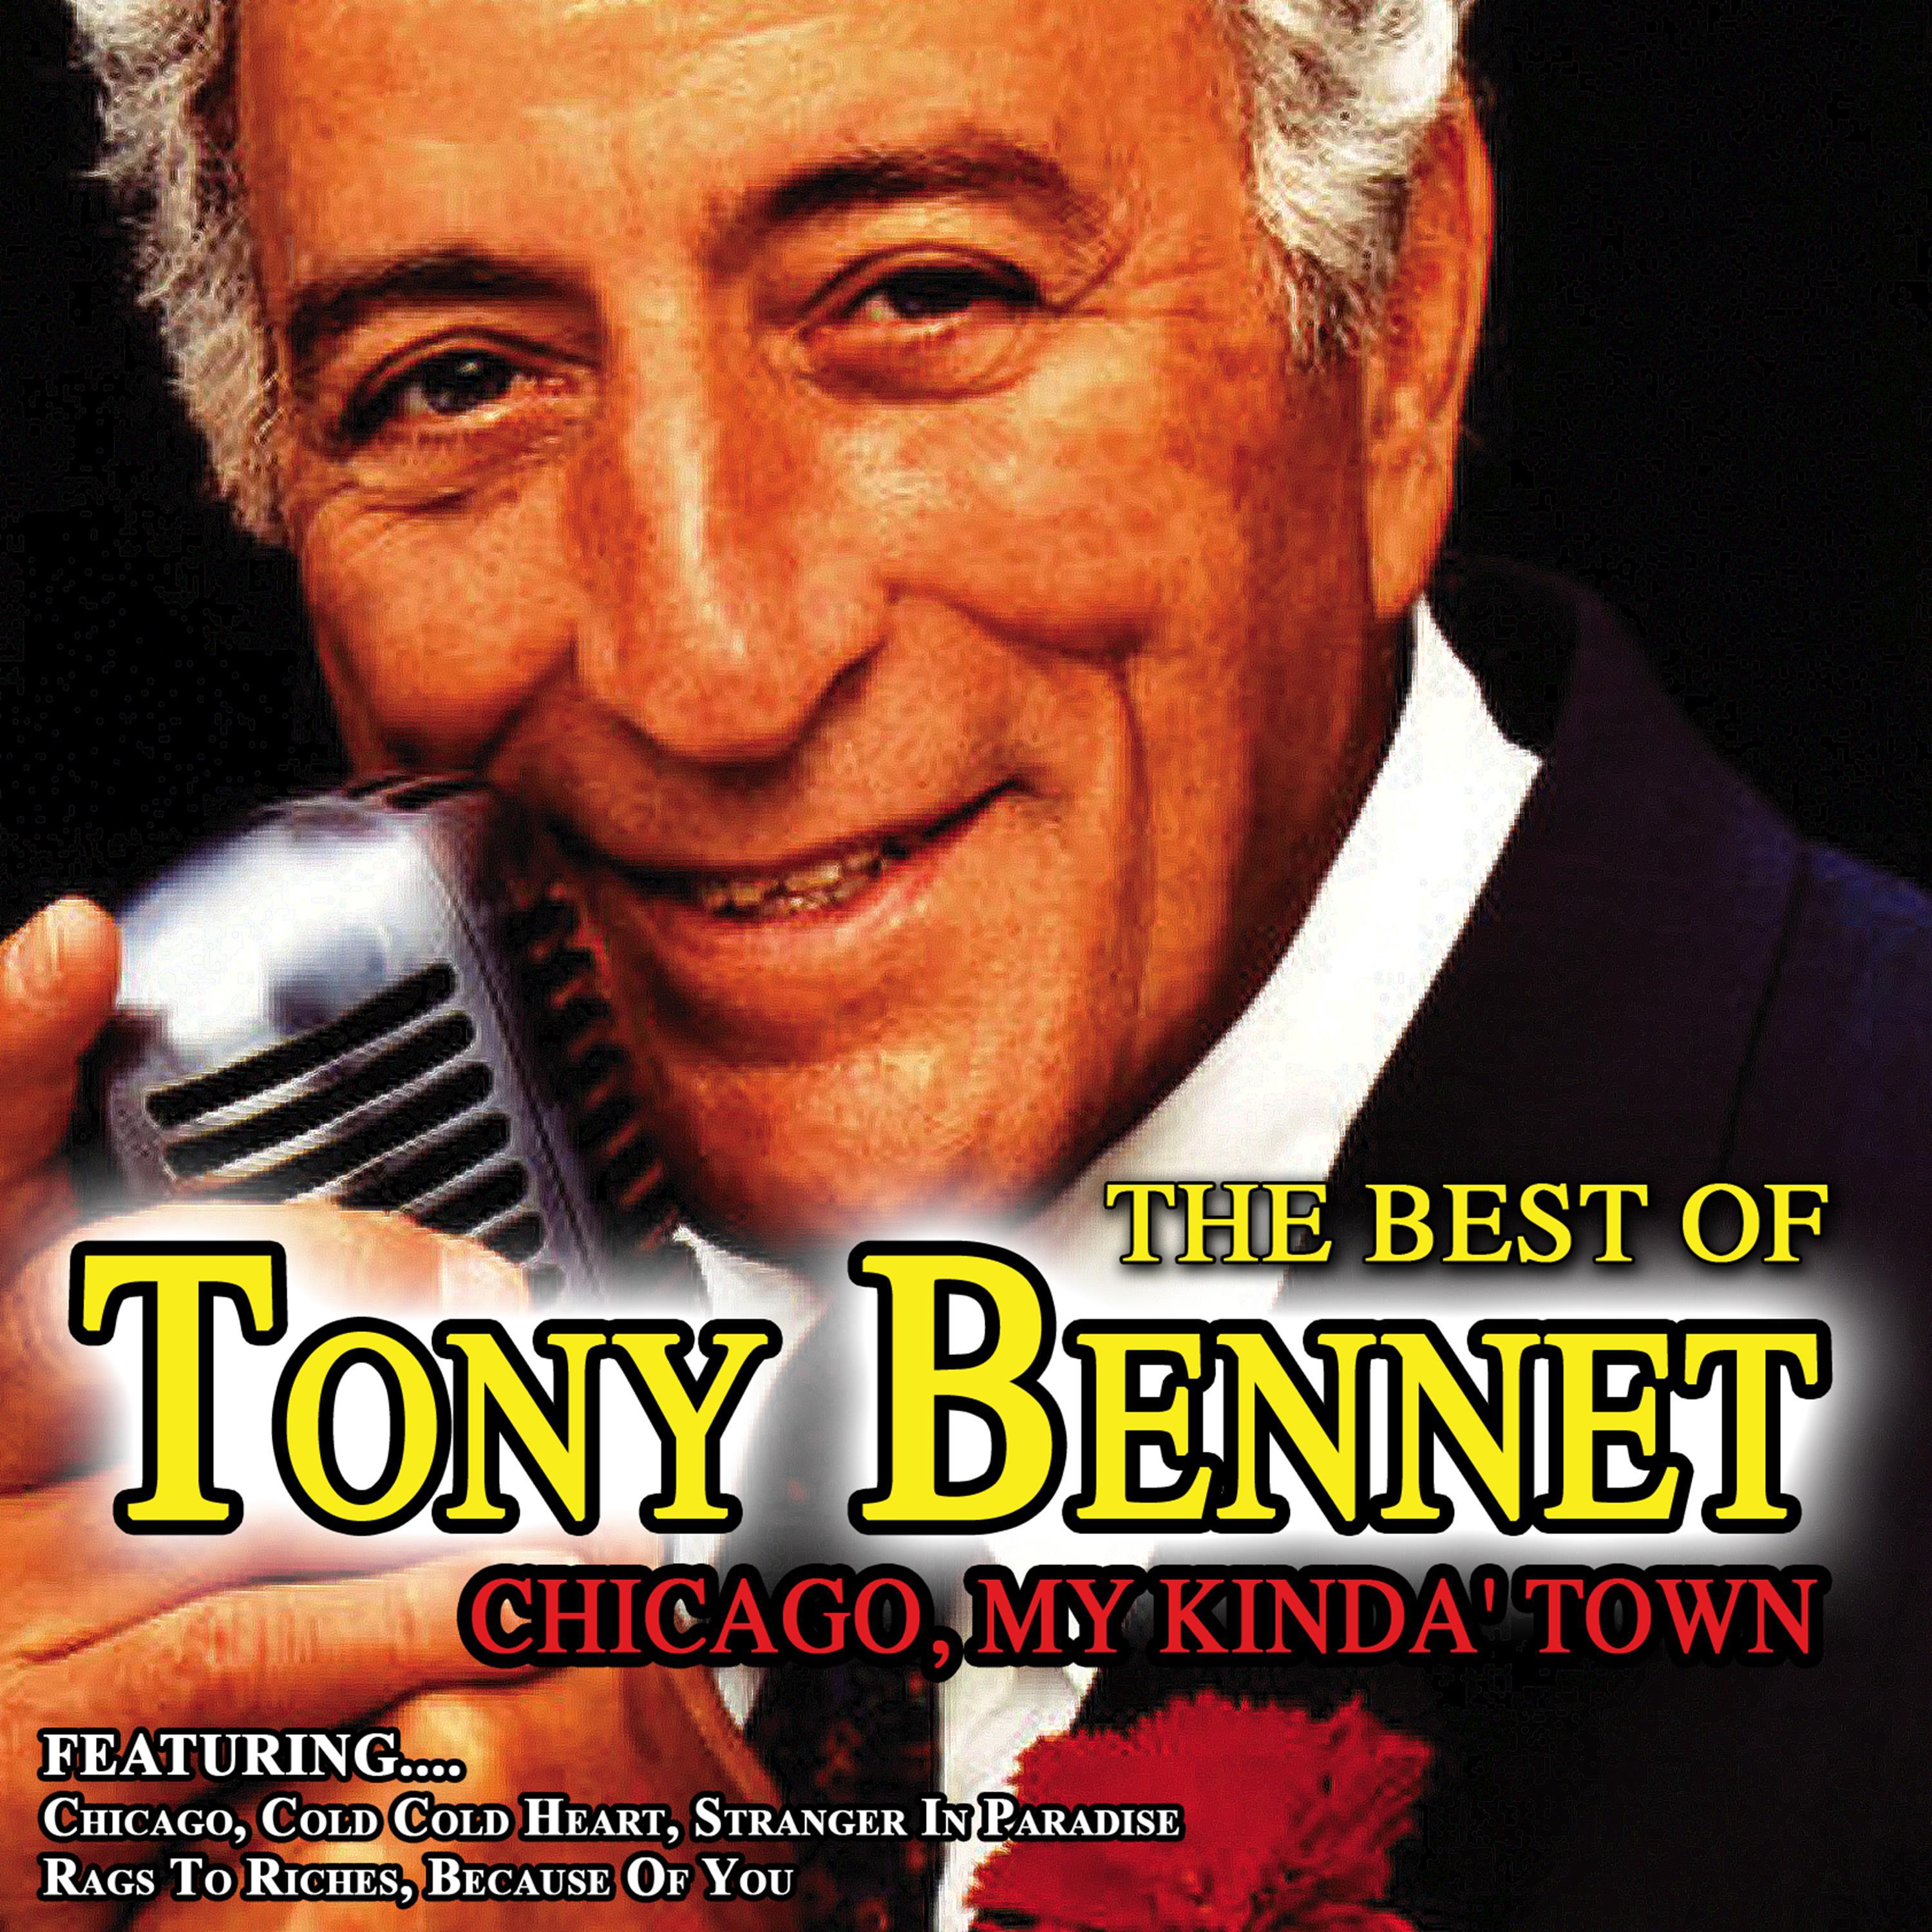 Chicago,My Kinda' Town - The Best of Tony Bennett